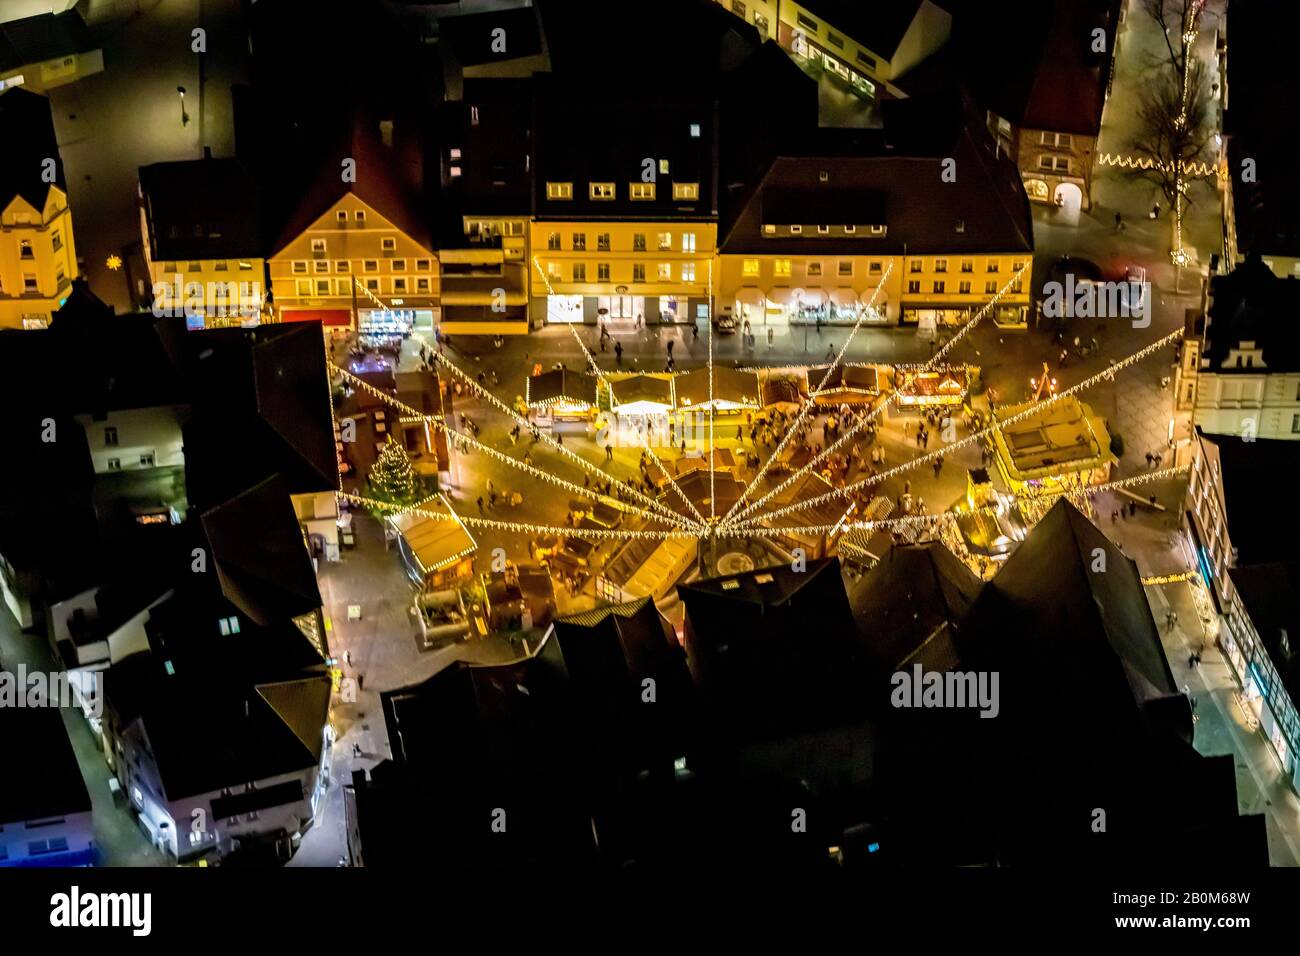 Vol photo aérien au-dessus de l'Unna nocturne, Unna, région de la Ruhr, Rhénanie-du-Nord-Westphalie, Allemagne, DE, Europe, photo aérienne, vue oiseaux-yeux, photo aérienne Banque D'Images